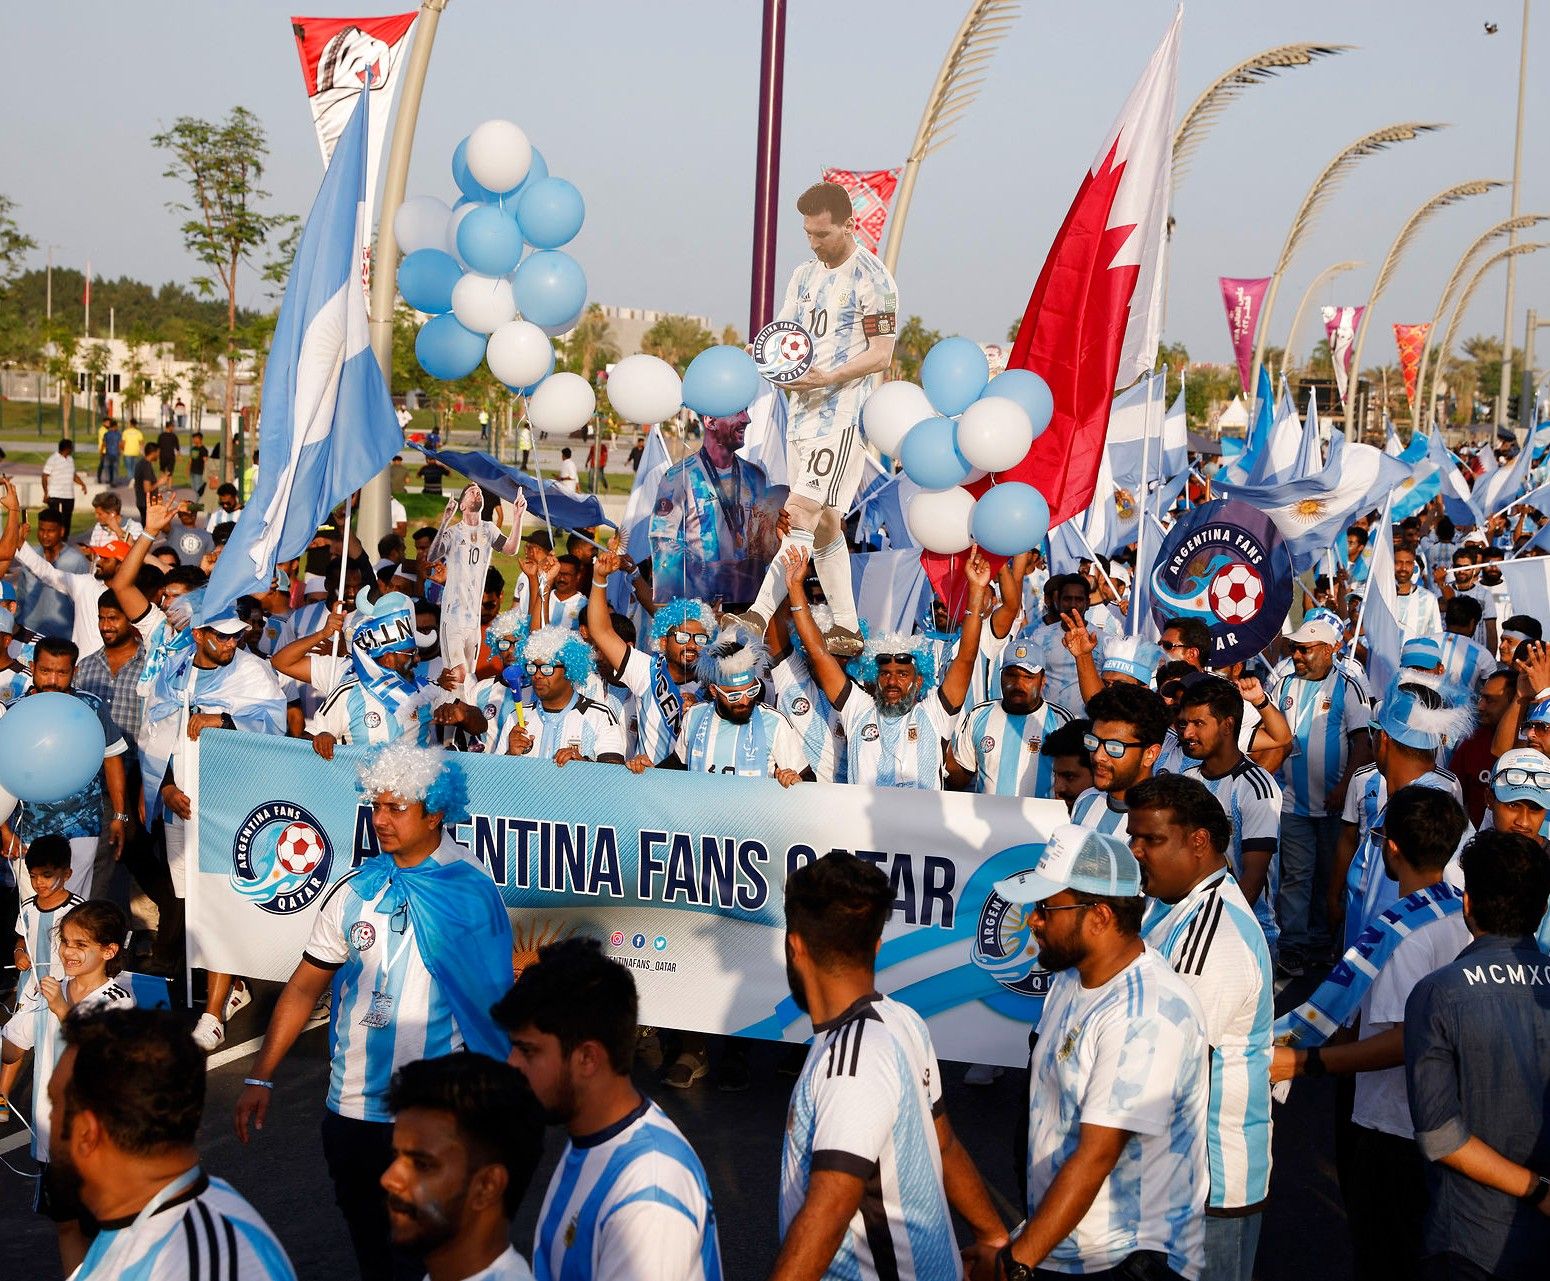 Argentinske fans i Qatar, der blev anklaget for at være betalte statister fra lande som Indien. Foto: John Sibley